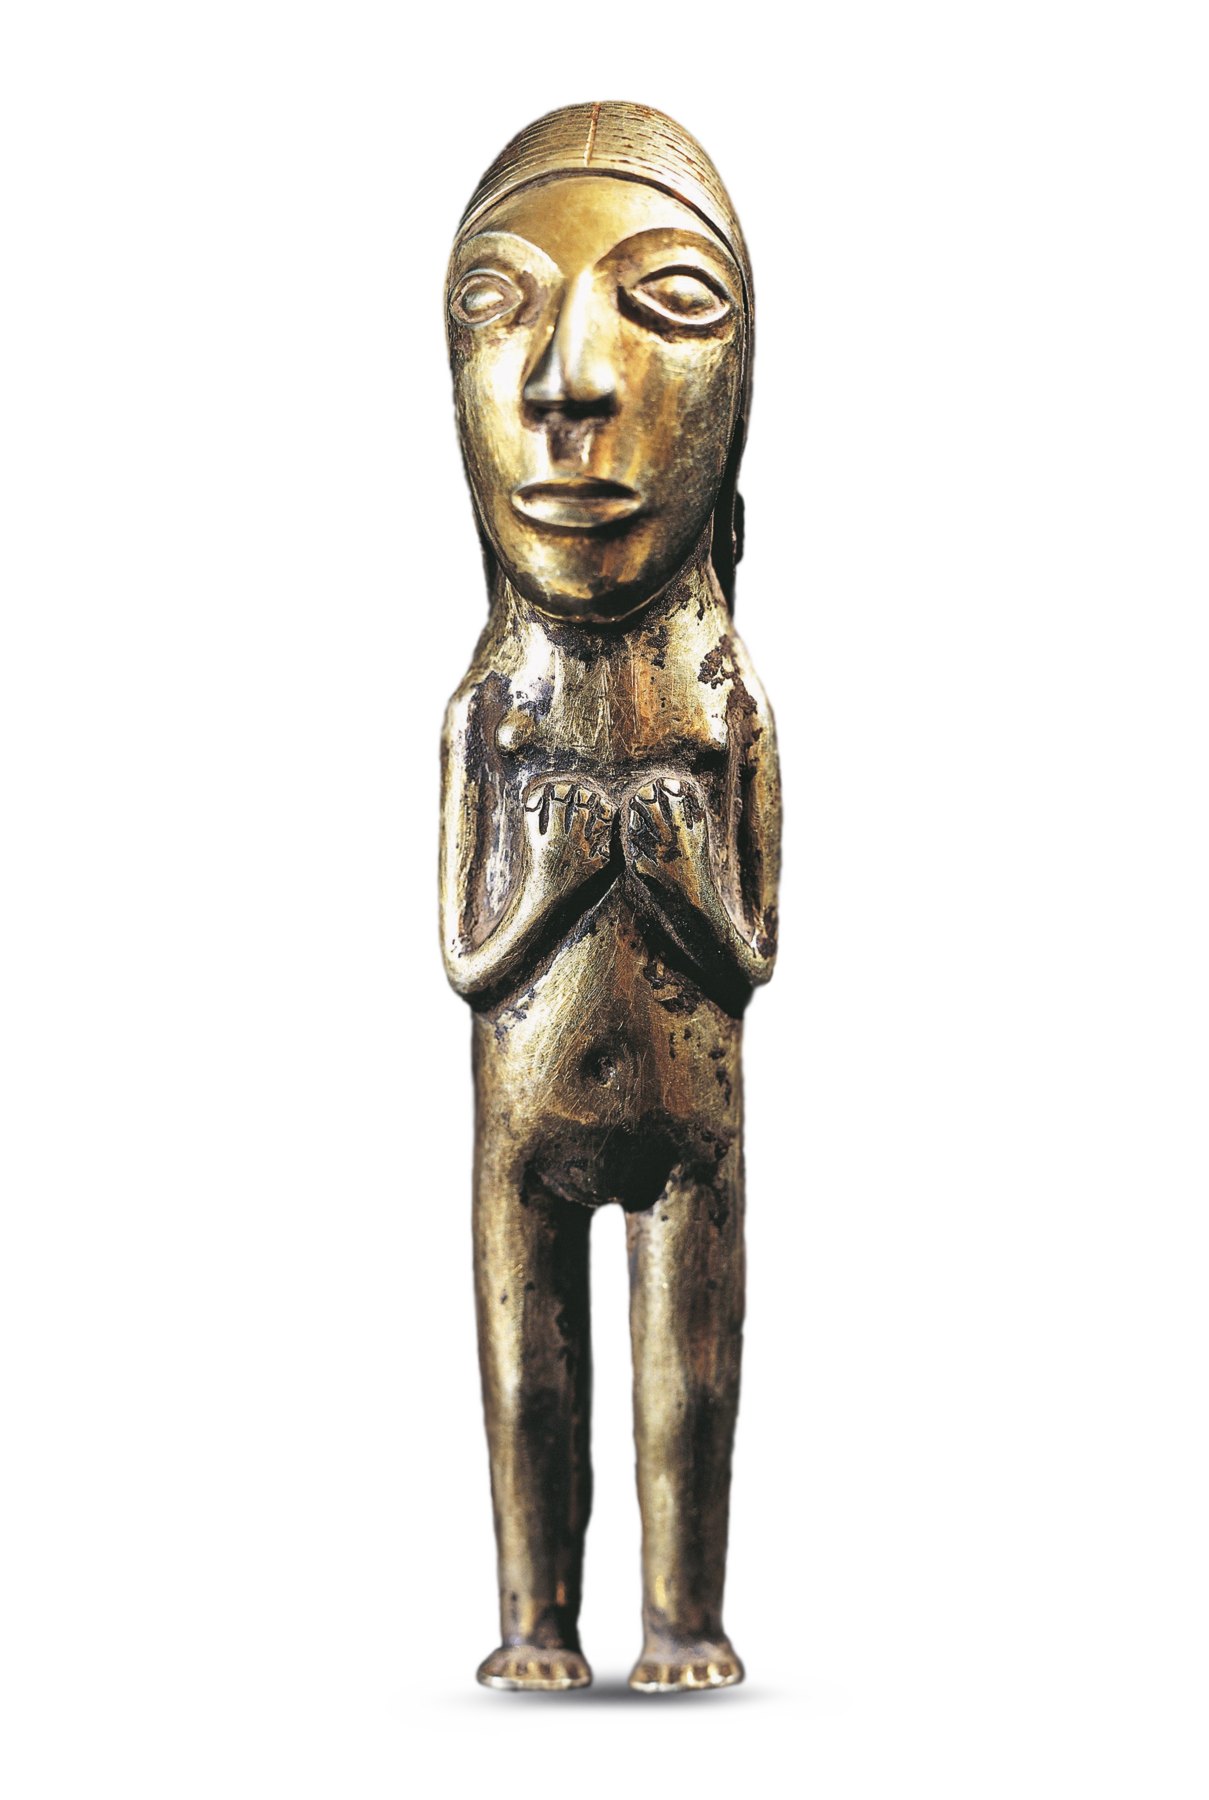 Fotografia. Estatueta de metal de cor dourada representando uma mulher. Ela tem a cabeça grande, o rosto comprido, olhos e nariz grandes, sobrancelhas e lábios grossos. Está nua, em pé, com as mãos sobre o peito e descalça.